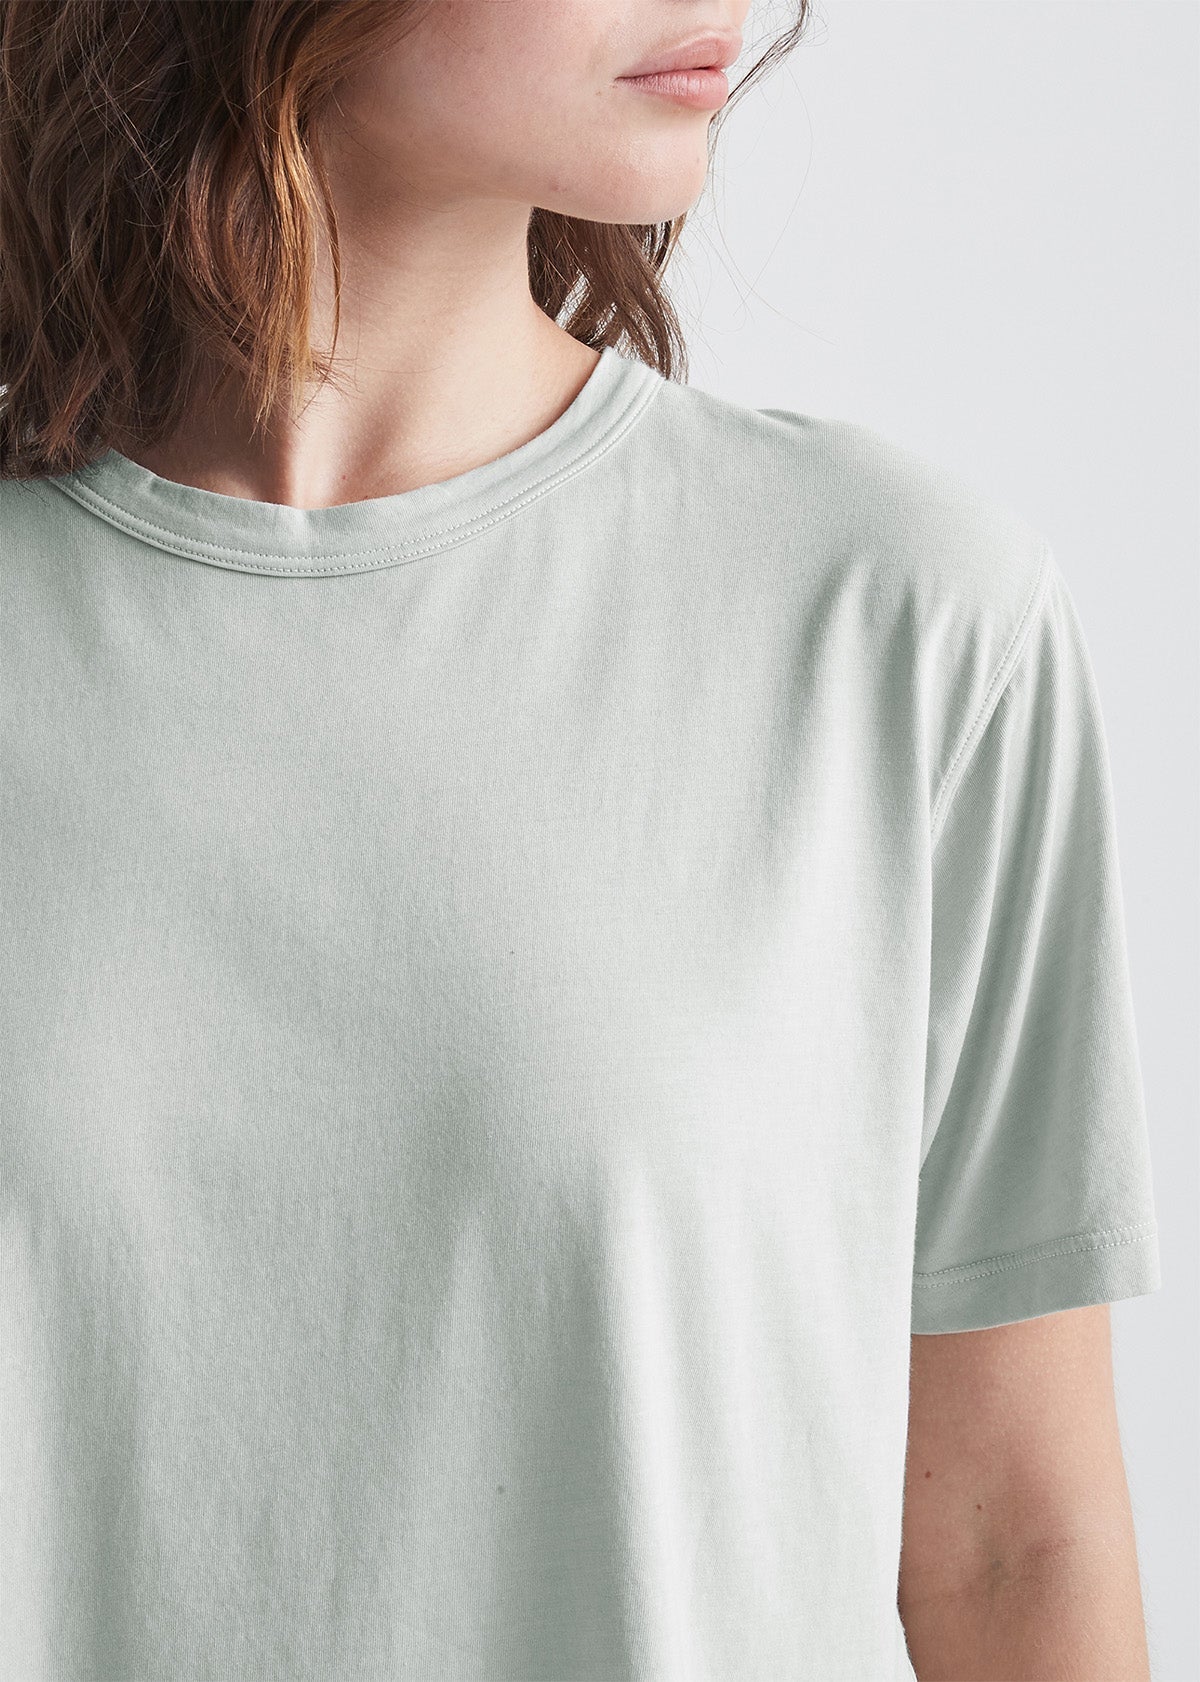 Women's Light Green Soft Lightweight Crop T-Shirt Detail